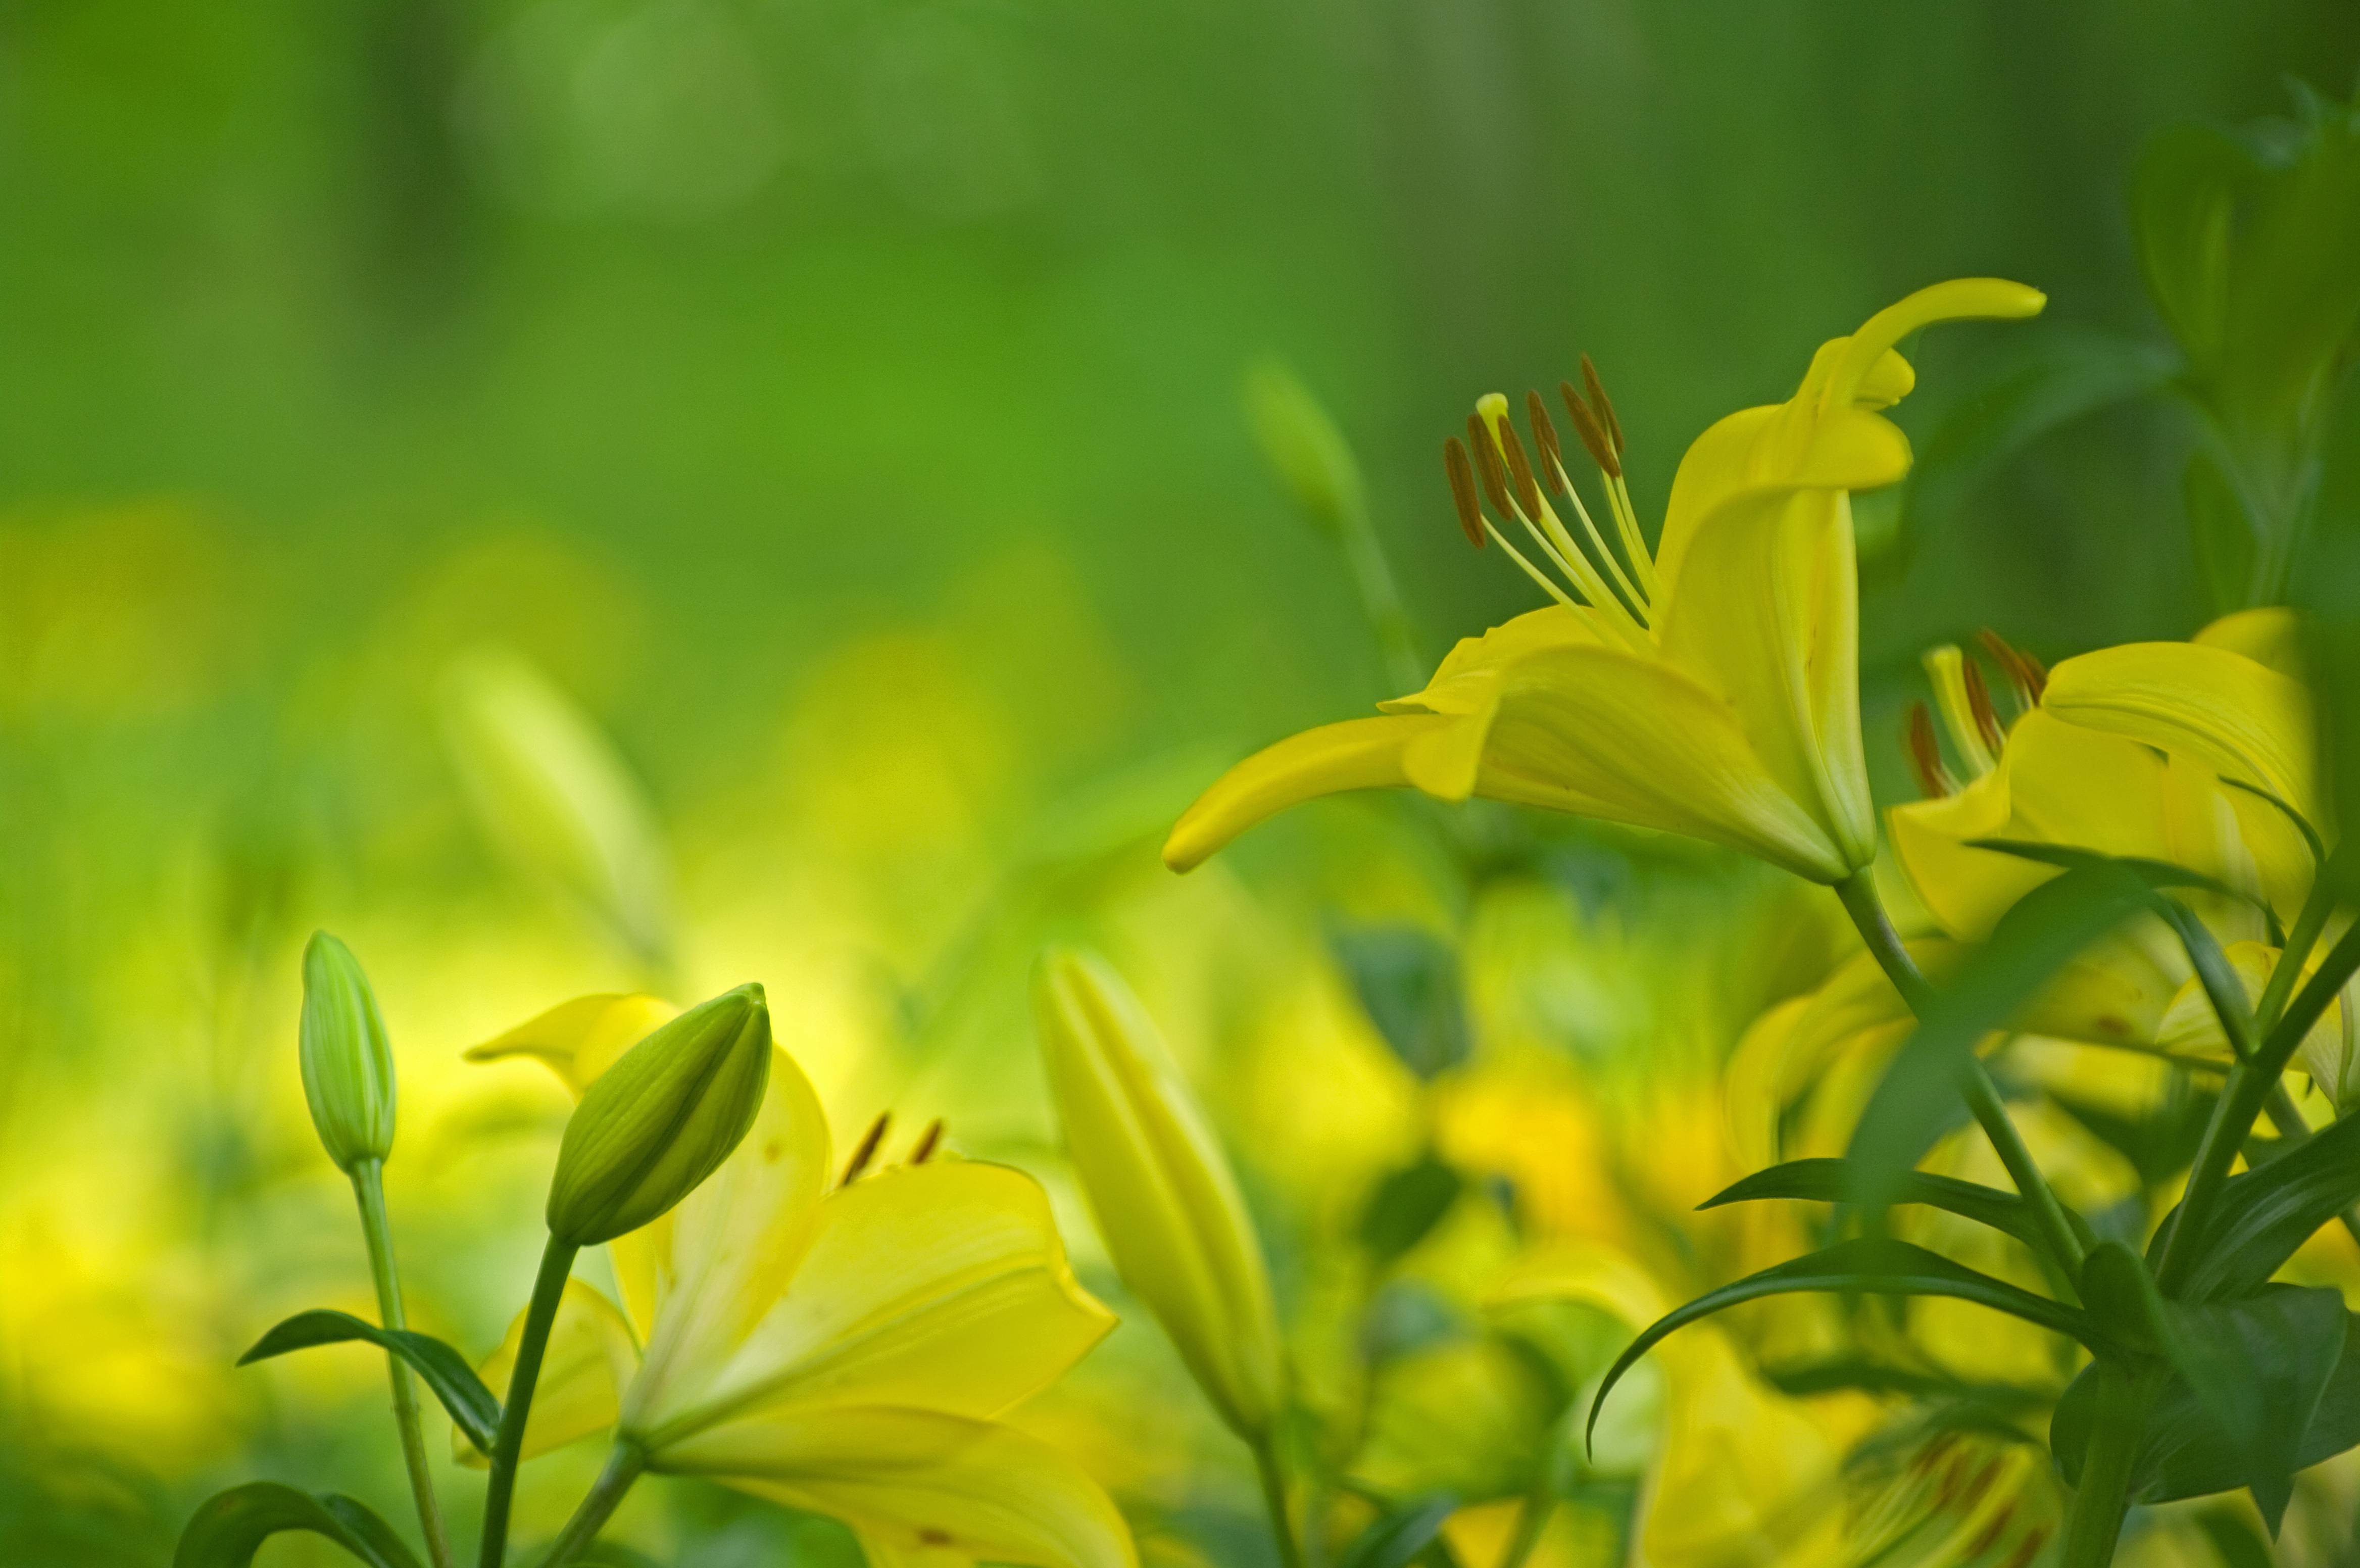 Фото цветок желтые бутоны желтые цветы - бесплатные картинки на Fonwall